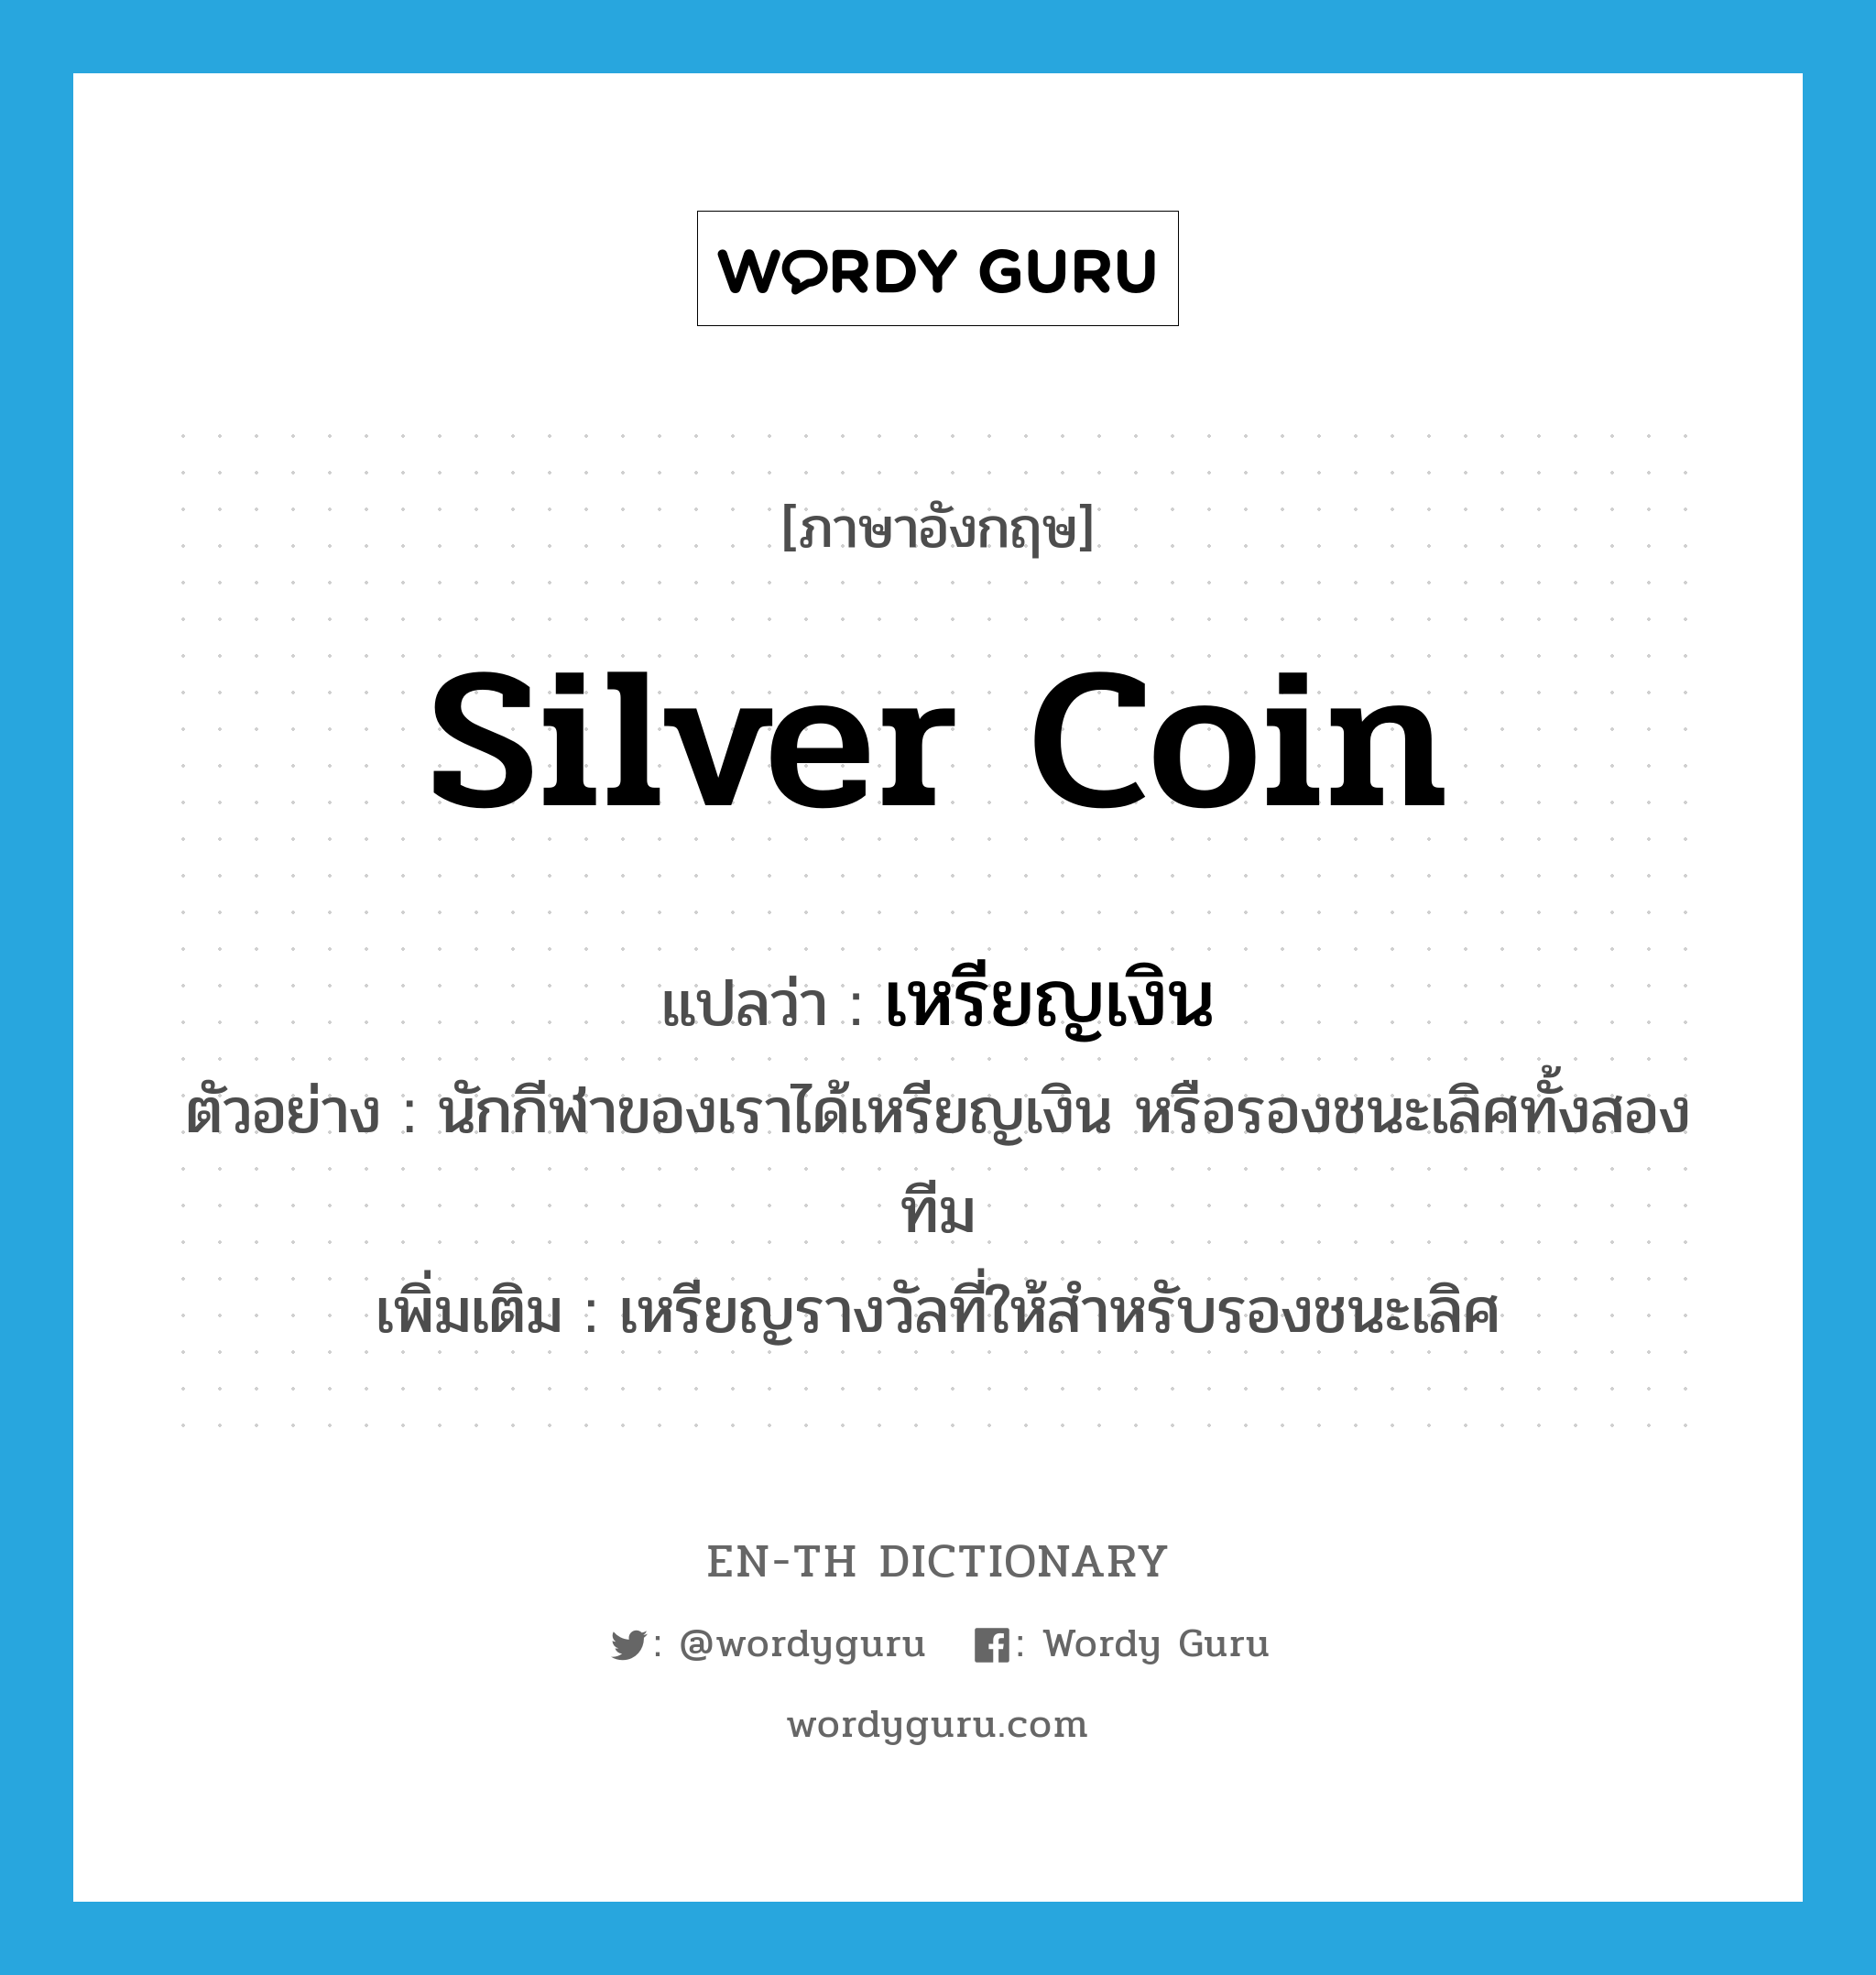 silver coin แปลว่า?, คำศัพท์ภาษาอังกฤษ silver coin แปลว่า เหรียญเงิน ประเภท N ตัวอย่าง นักกีฬาของเราได้เหรียญเงิน หรือรองชนะเลิศทั้งสองทีม เพิ่มเติม เหรียญรางวัลที่ให้สำหรับรองชนะเลิศ หมวด N